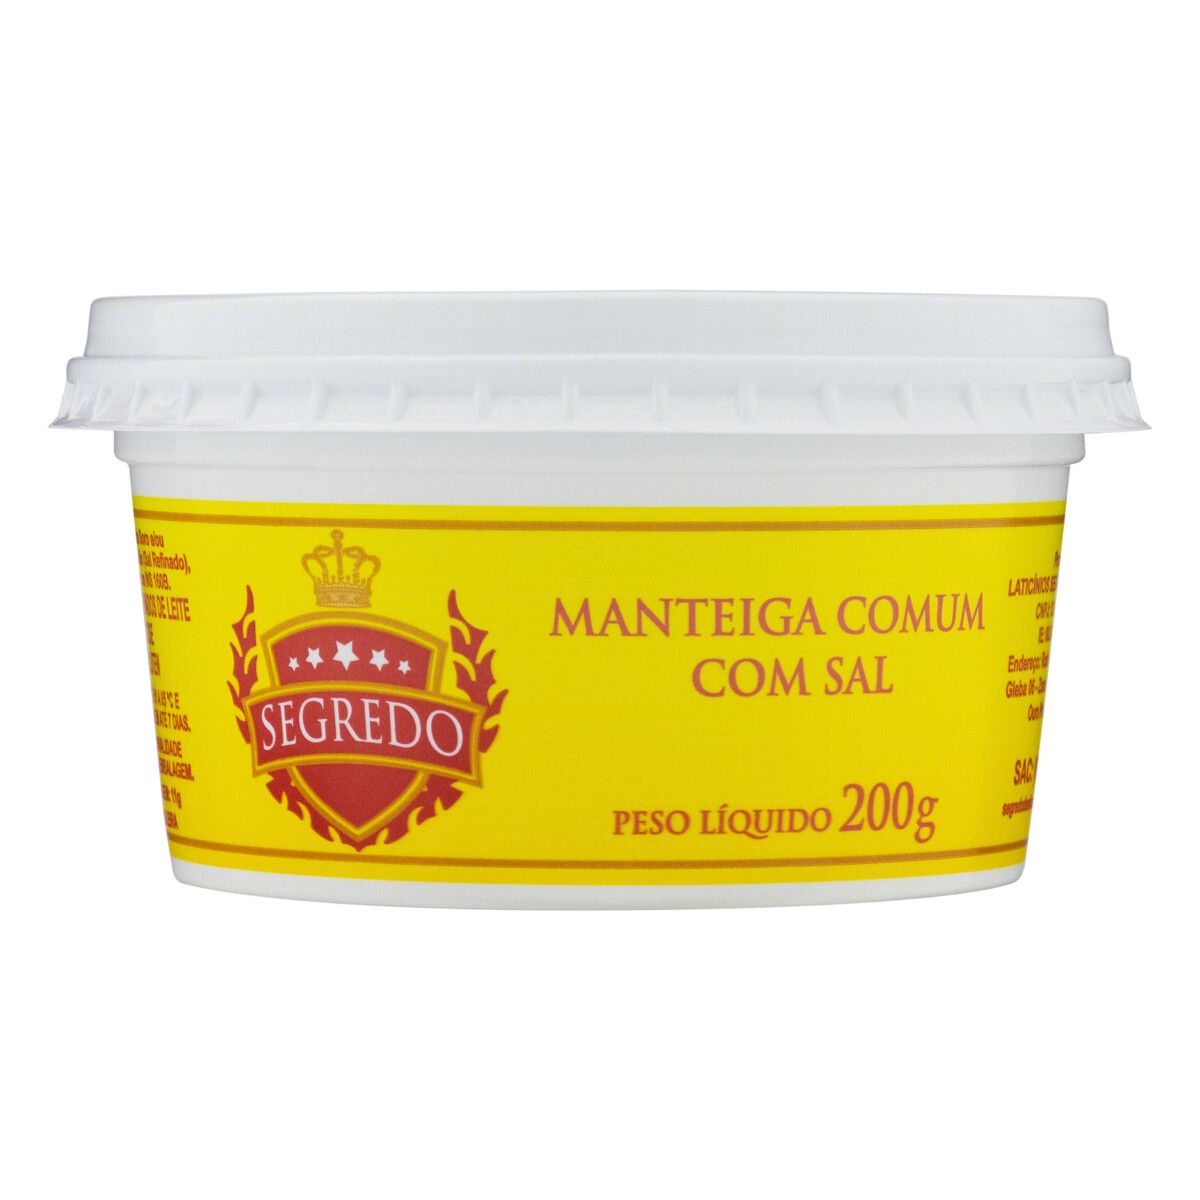 Manteiga Comum com Sal Segredo Pote 200g image number 0